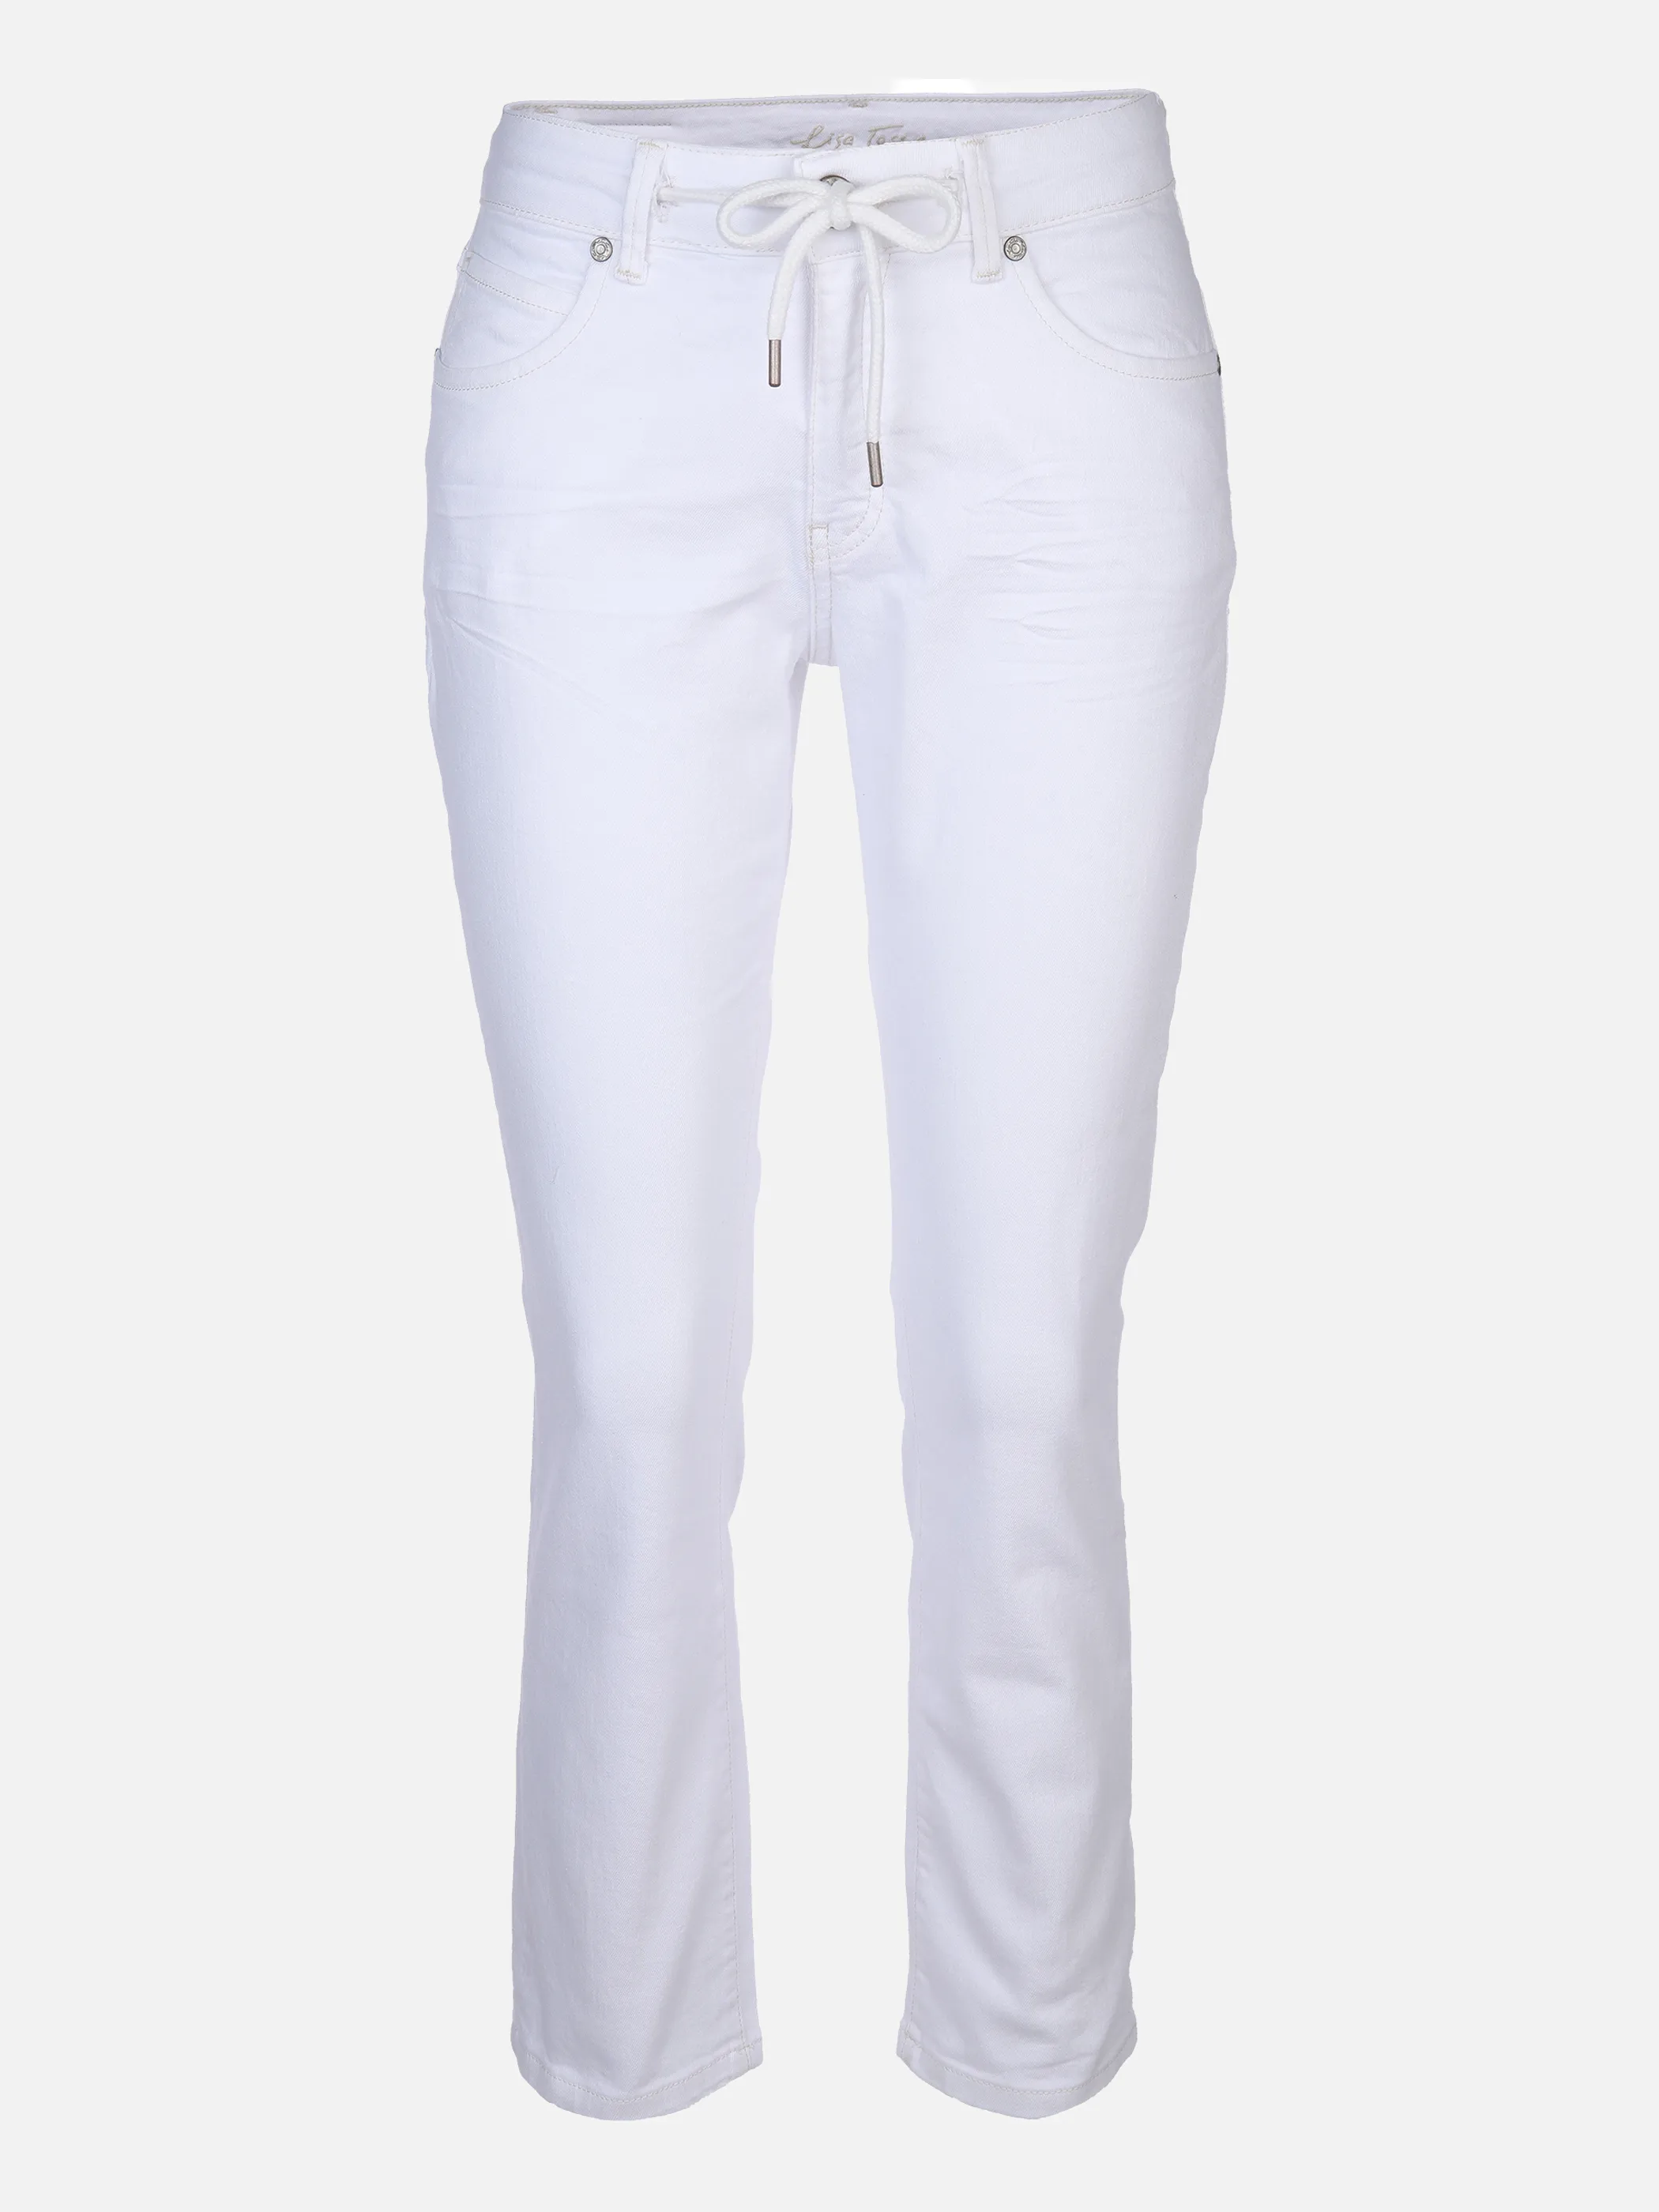 Lisa Tossa Da-Jeans m. Bindeband Weiß 862059 OFF WHITE 1